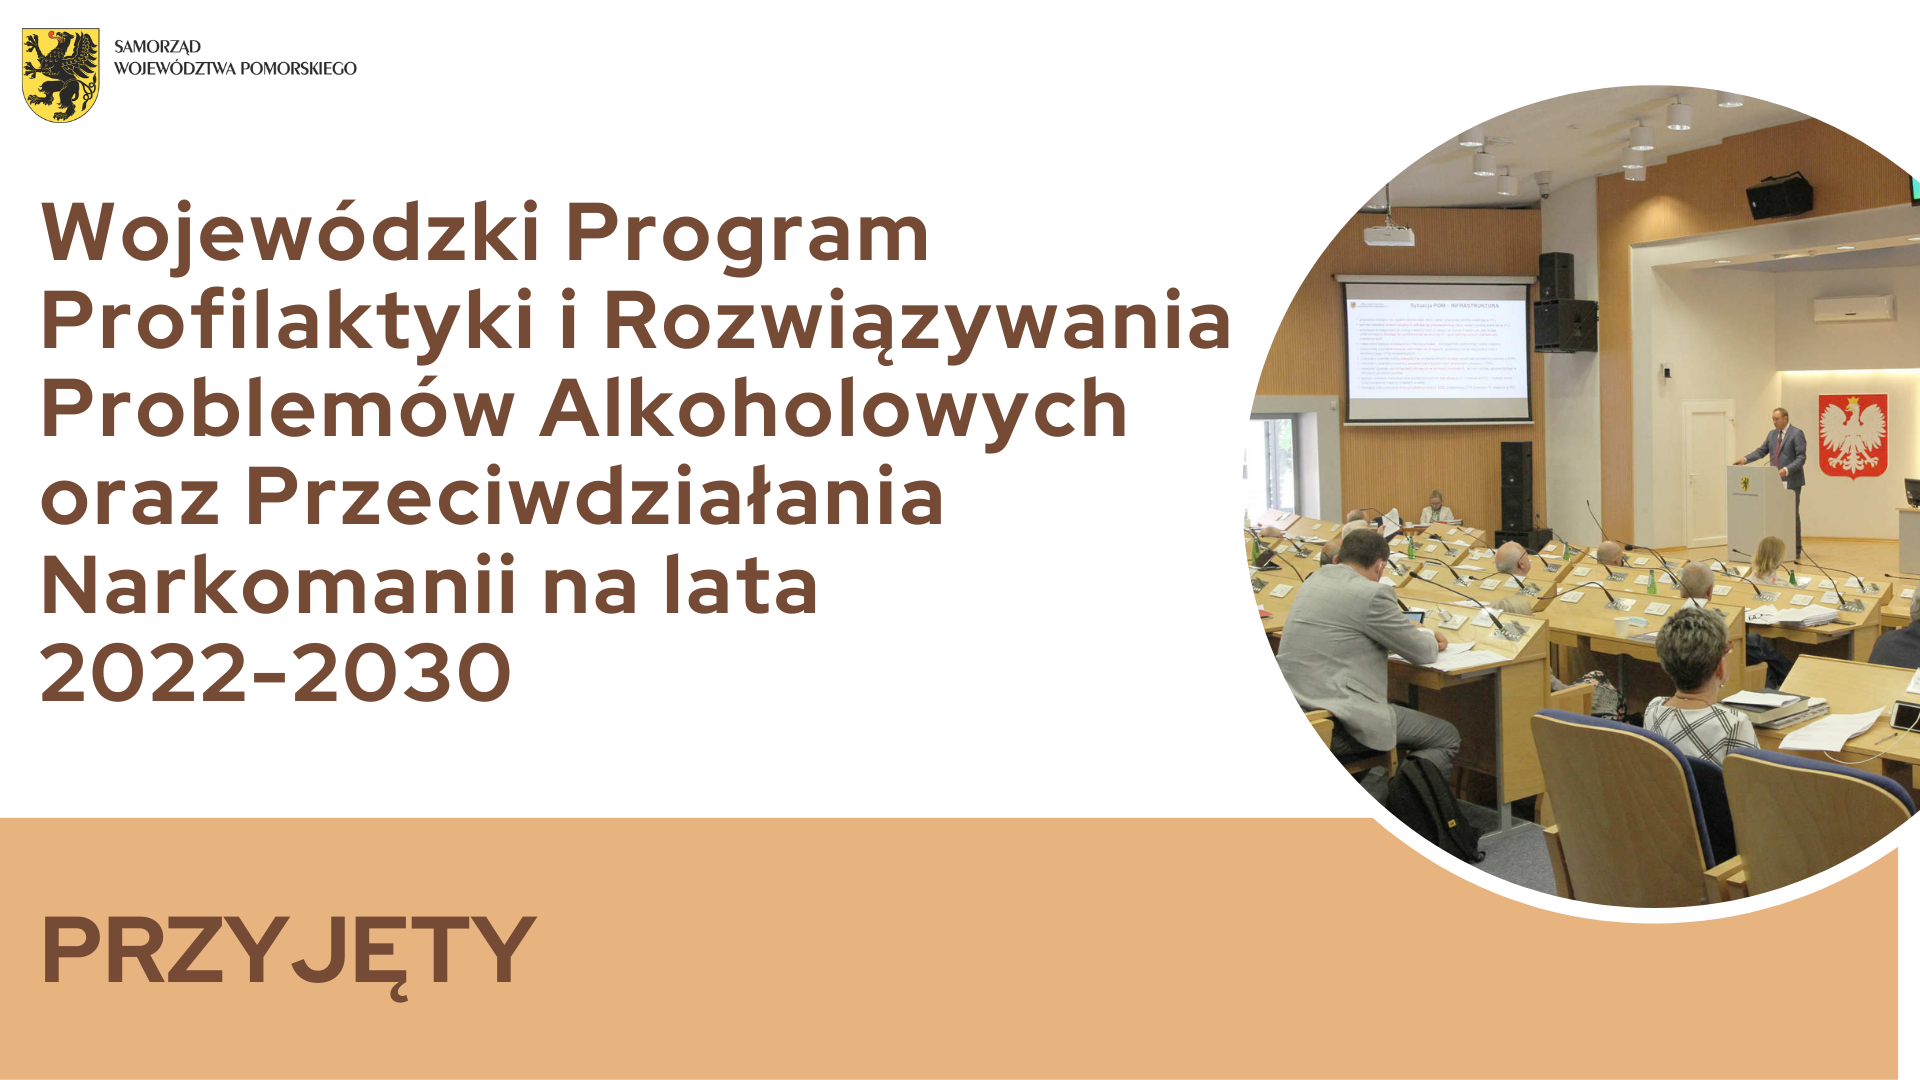 Wojewódzki Program Profilaktyki i Rozwiązywania Problemów Alkoholowych oraz Przeciwdziałania Narkomanii na lata 2022-2030